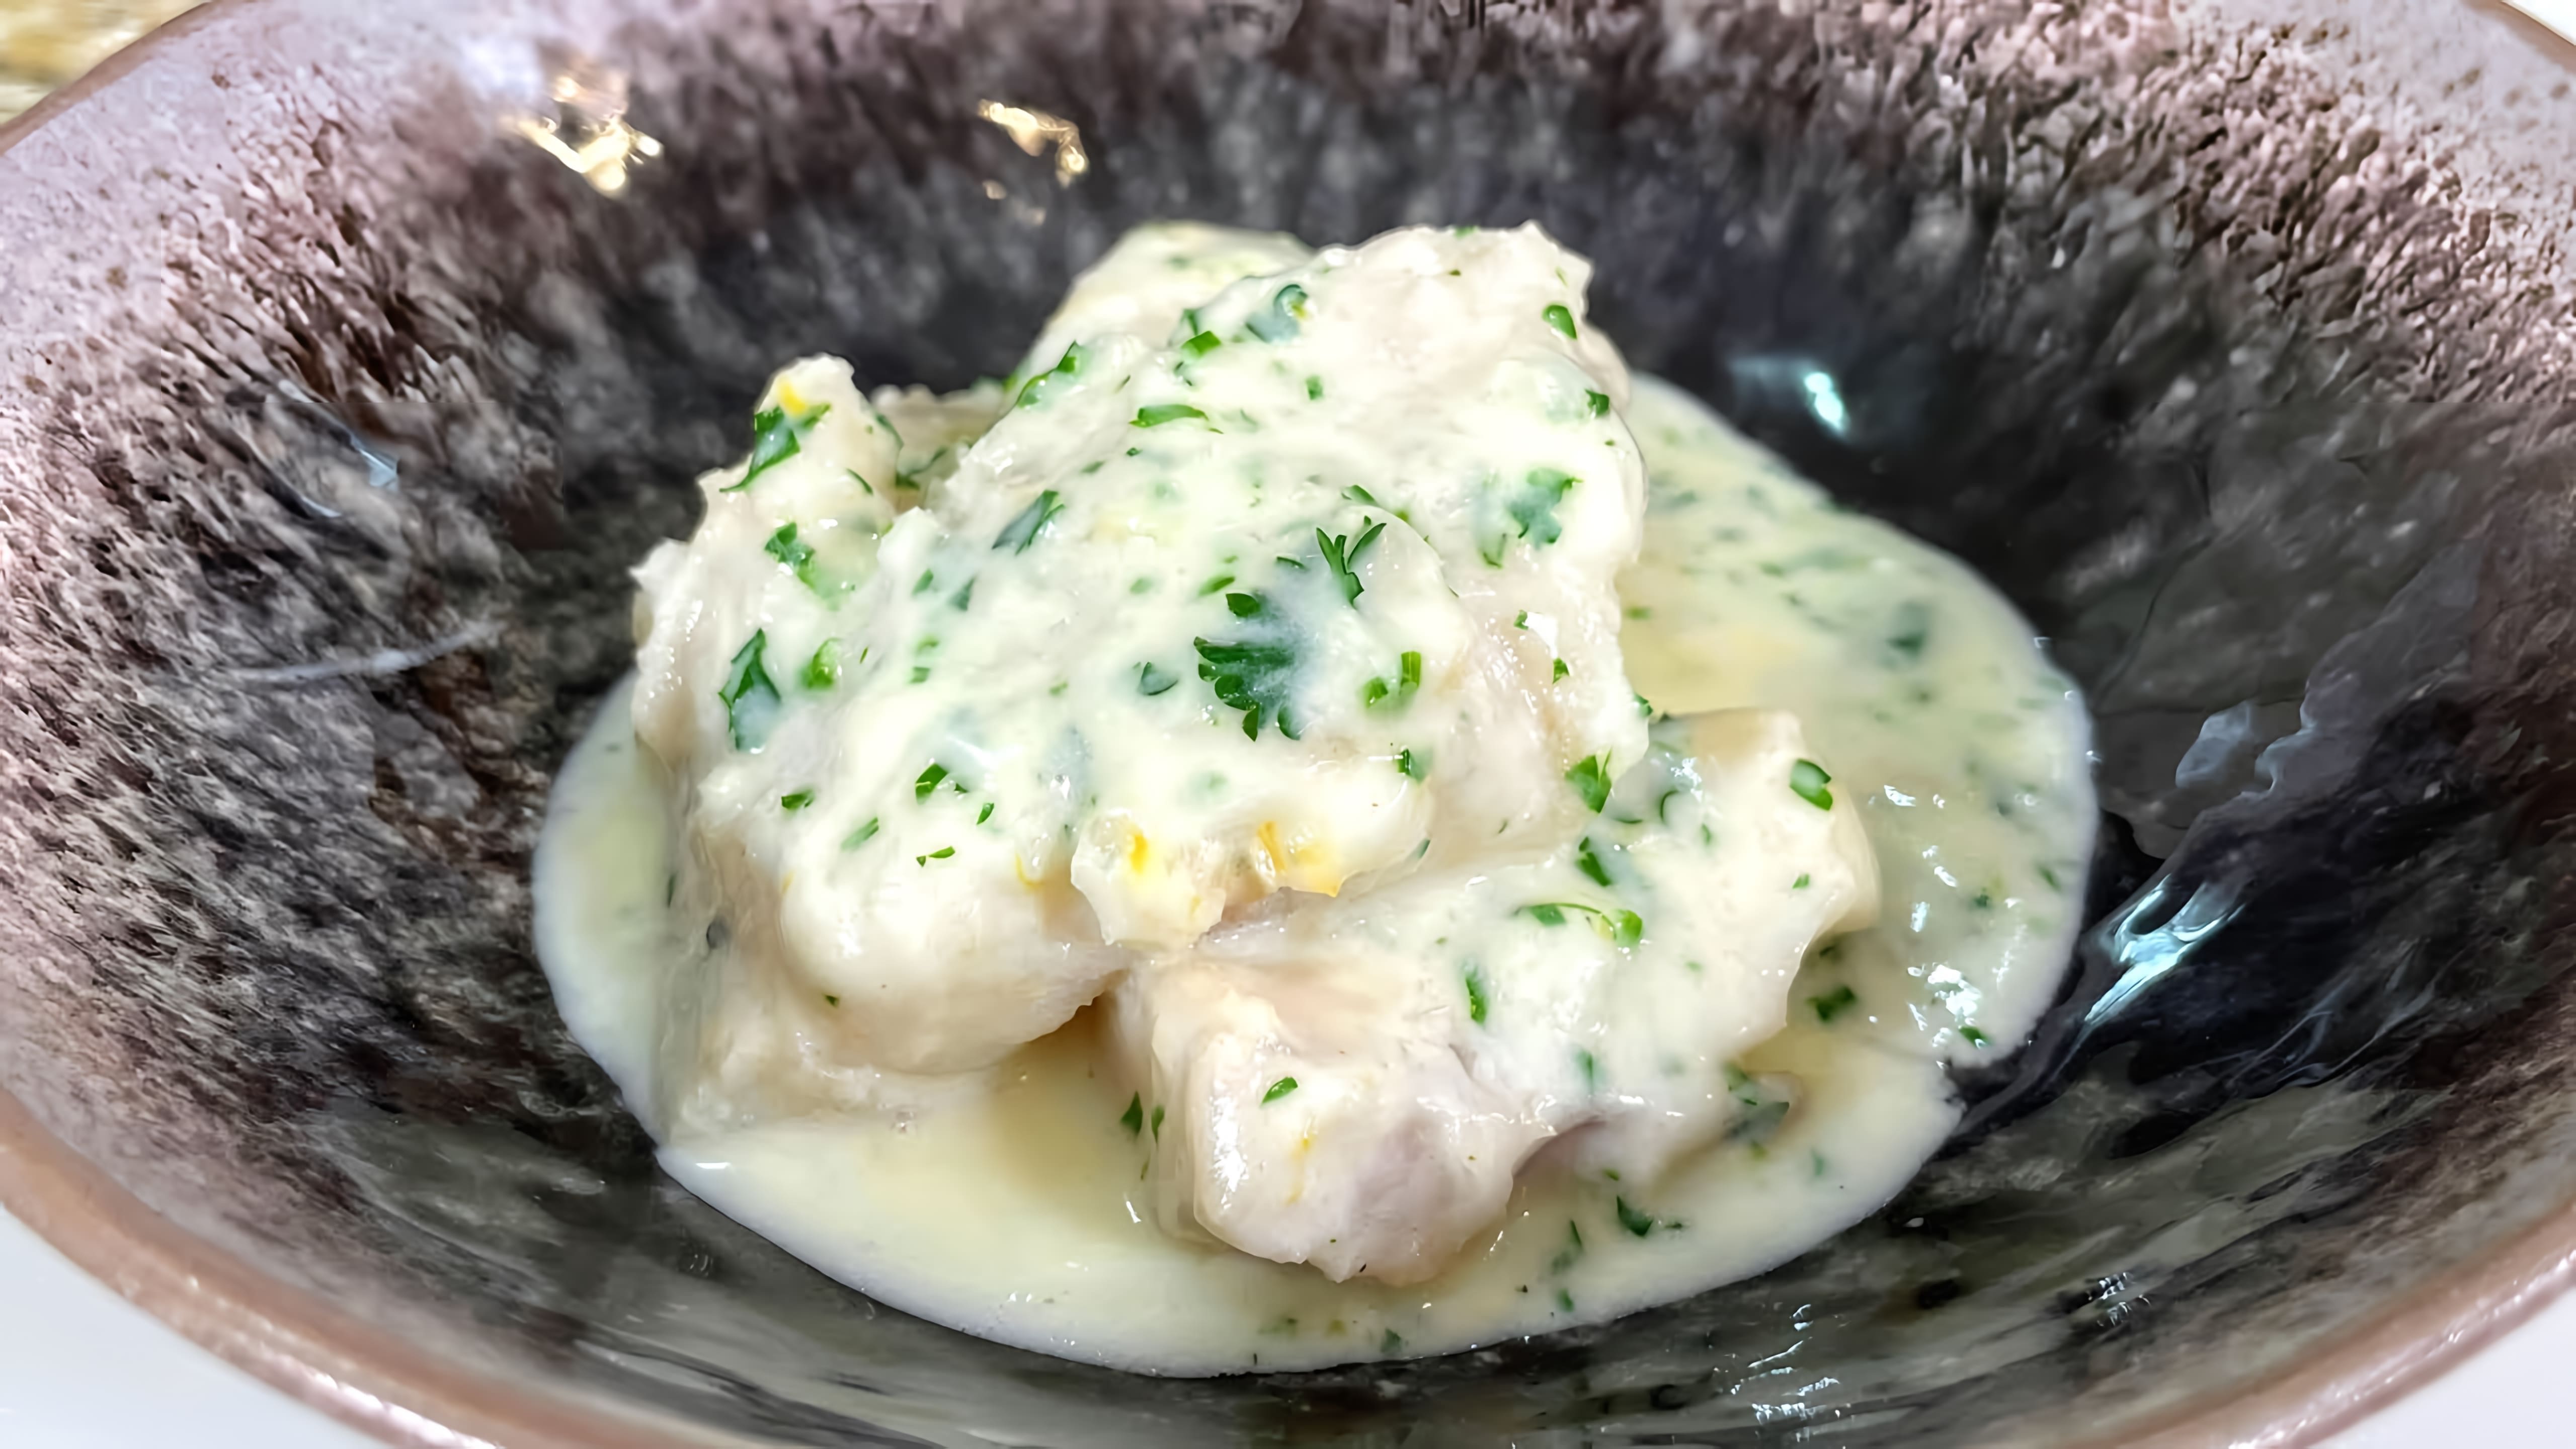 Видео рецепт приготовления рыбы (минтая, трески или любых белых рыбьих филе) в легком, вкусном белом соусе